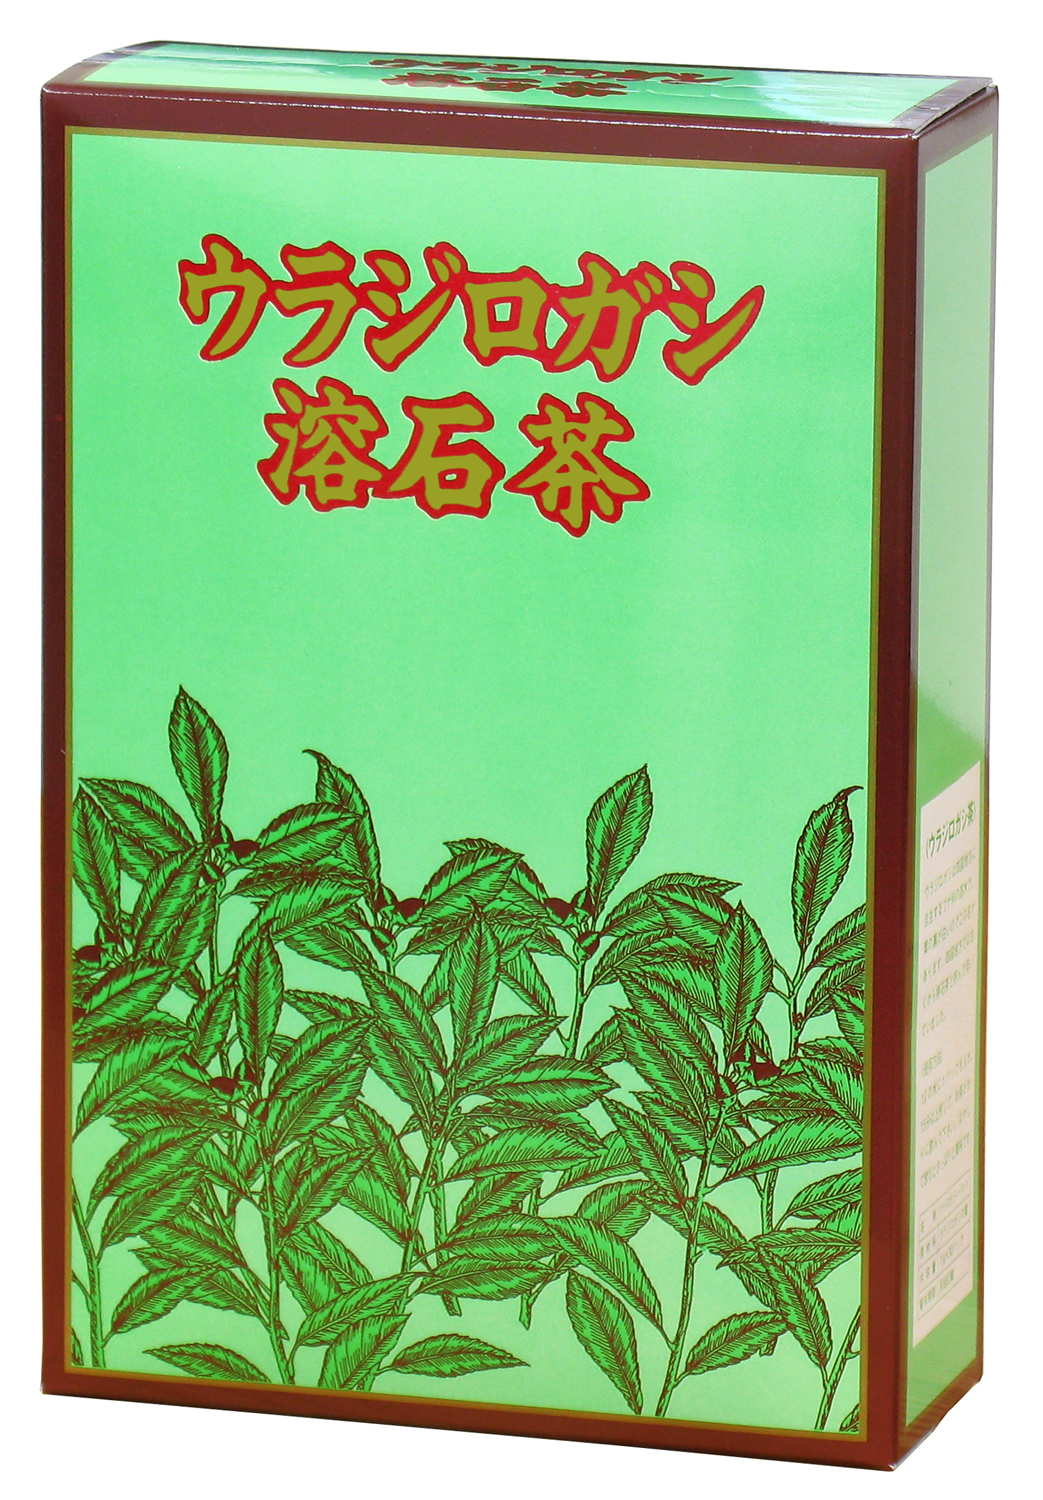 国産ウラジロガシ茶7g×30パック